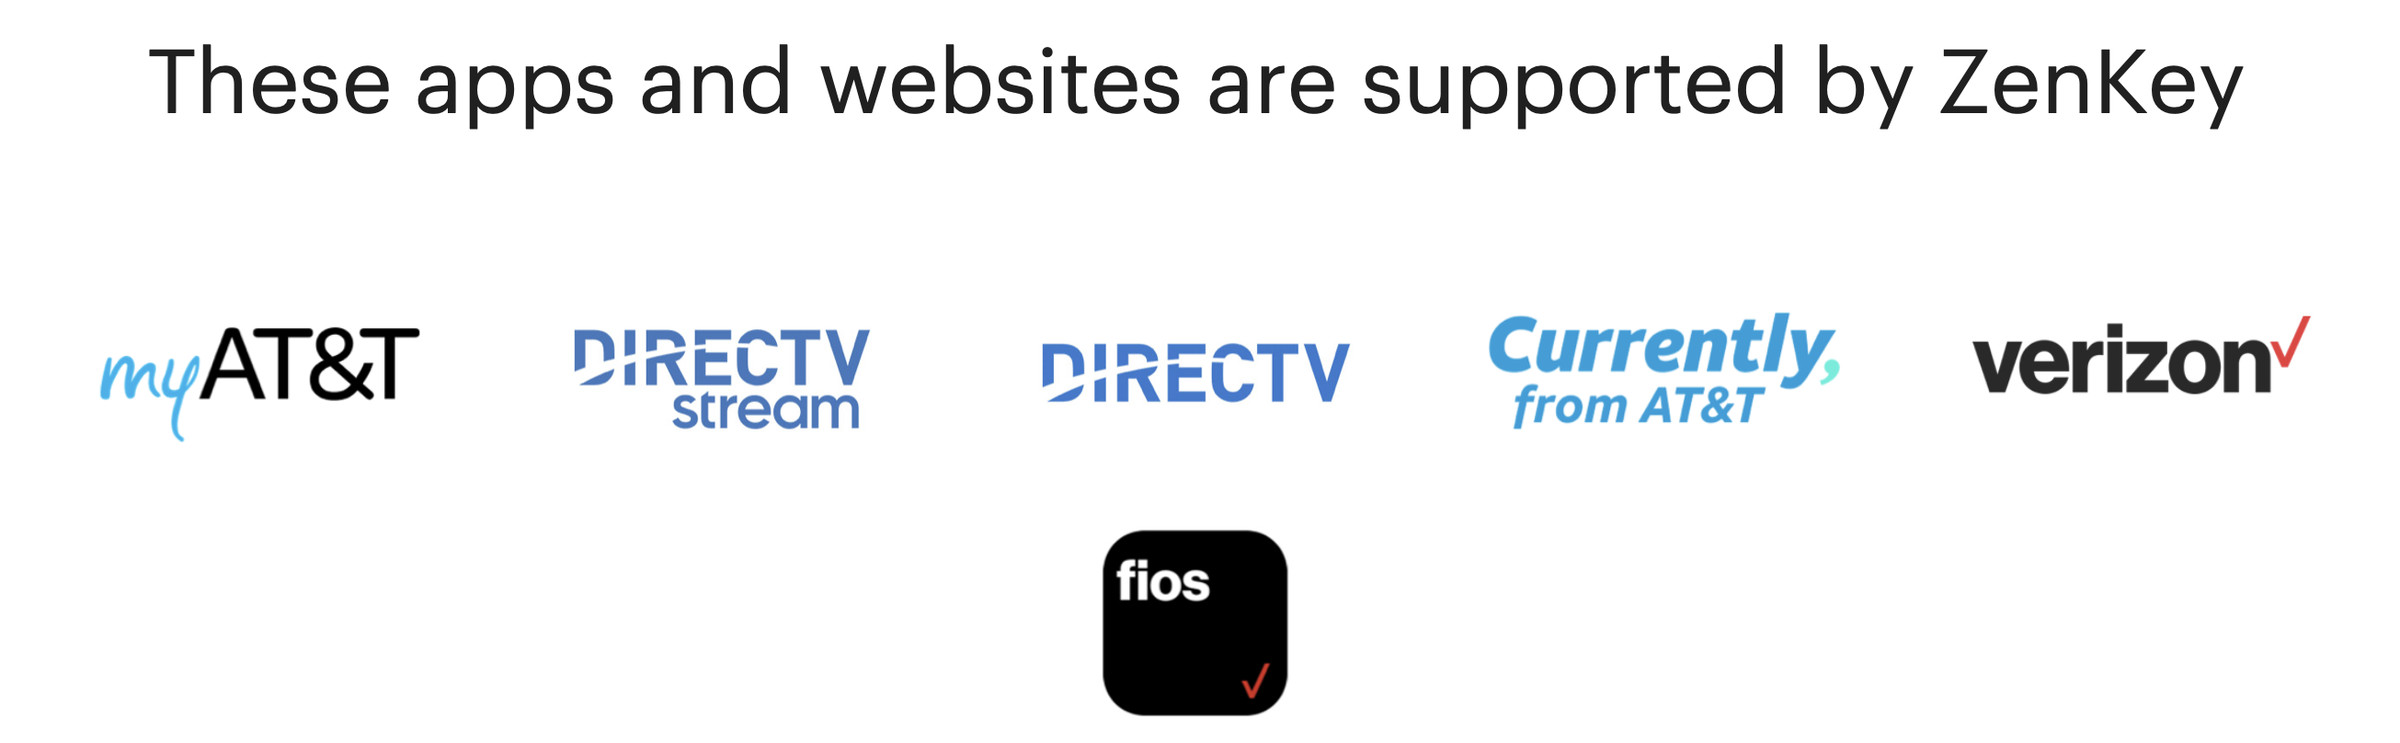 تصویر صفحه‌ای که می‌گوید «این برنامه‌ها و وب‌سایت‌ها توسط ZenKey پشتیبانی می‌شوند»، سپس آرم‌های myAT&T، DirecTV Stream، DirecTV، Currently from AT&T، Verizon، و FIOS را فهرست می‌کند.